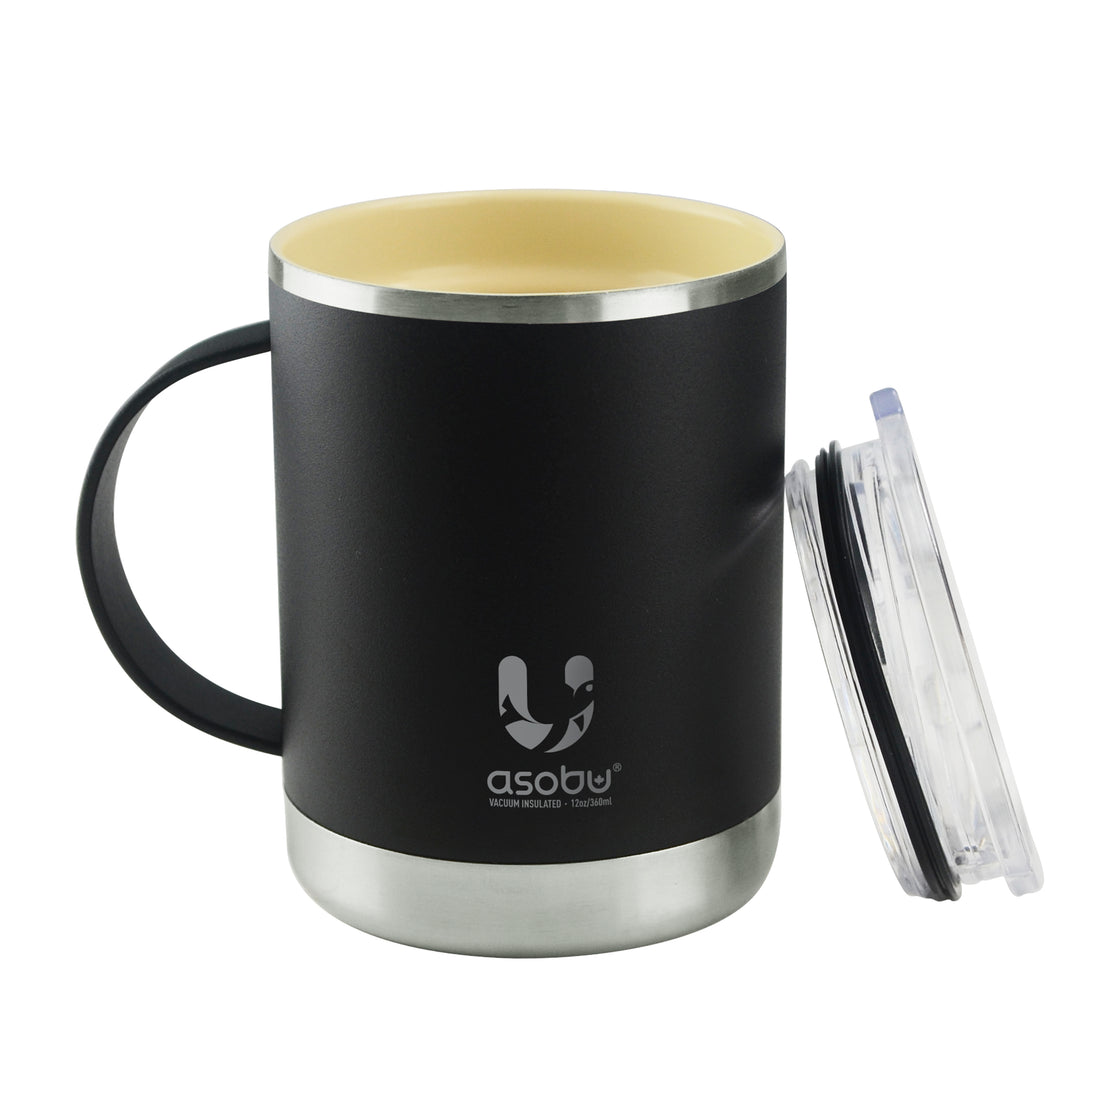 Asobu Ultimate Kaffee-Thermobecher 360ml, keramikbeschichtet